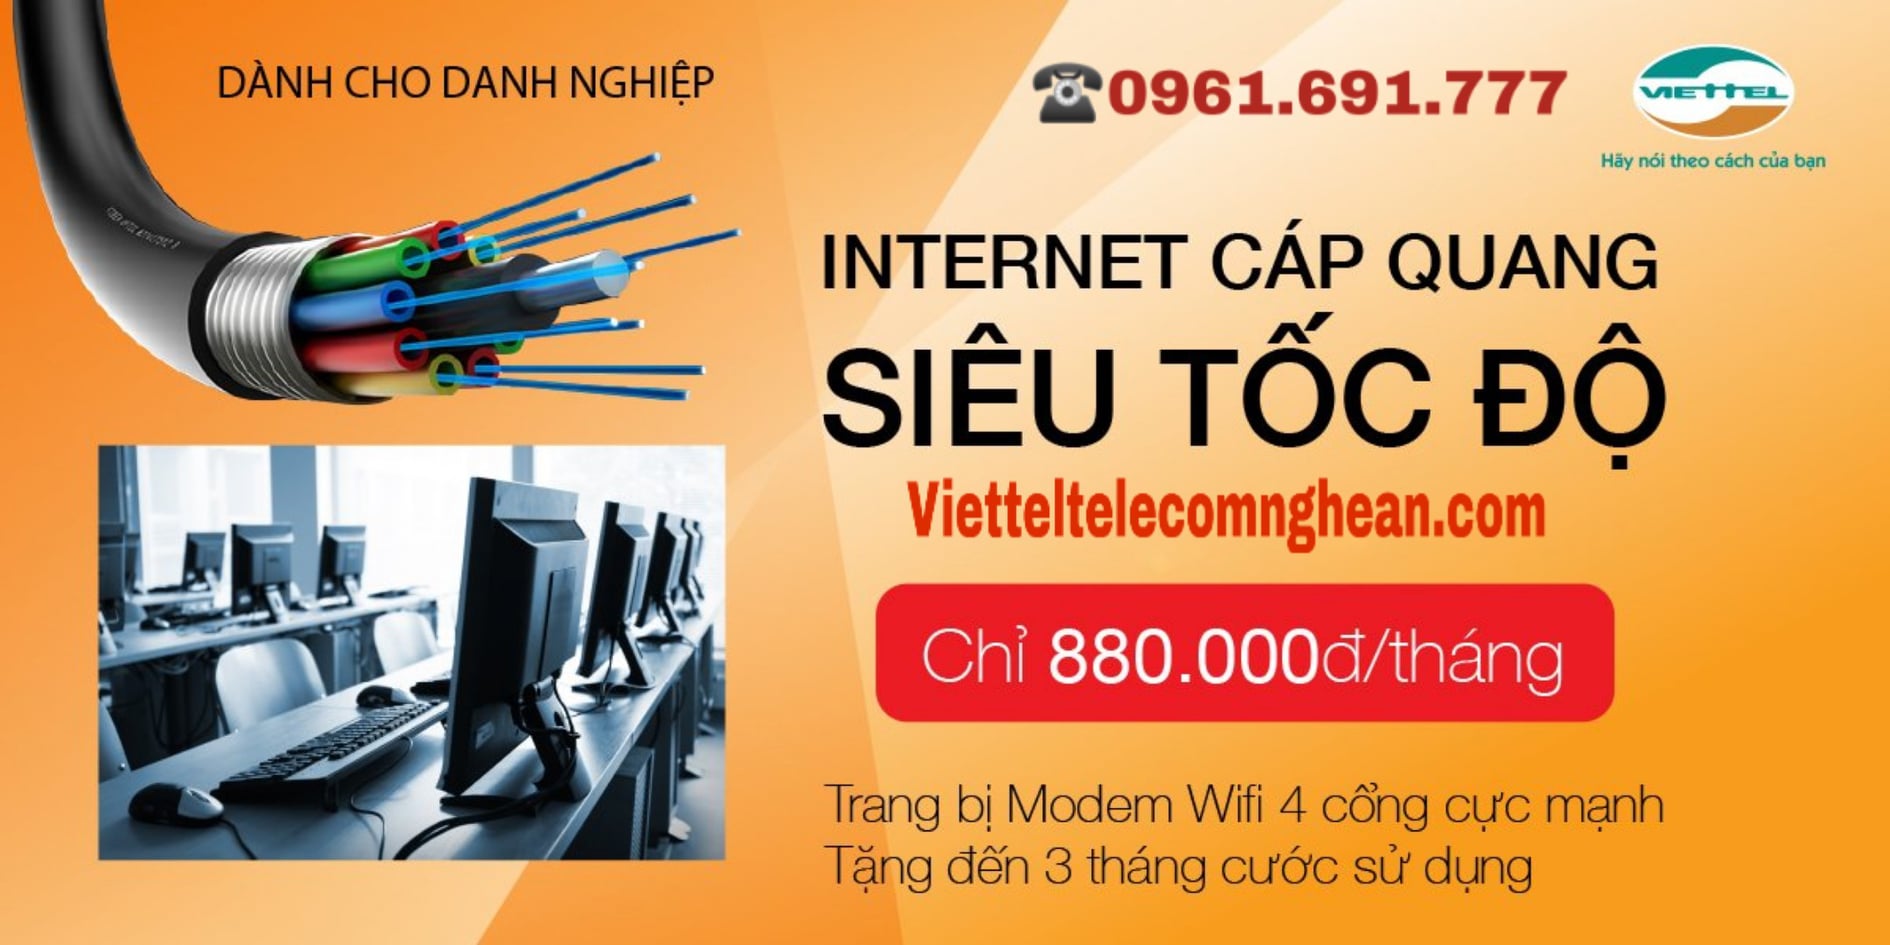 Internet Viettel giải pháp cho các doanh nghiệp